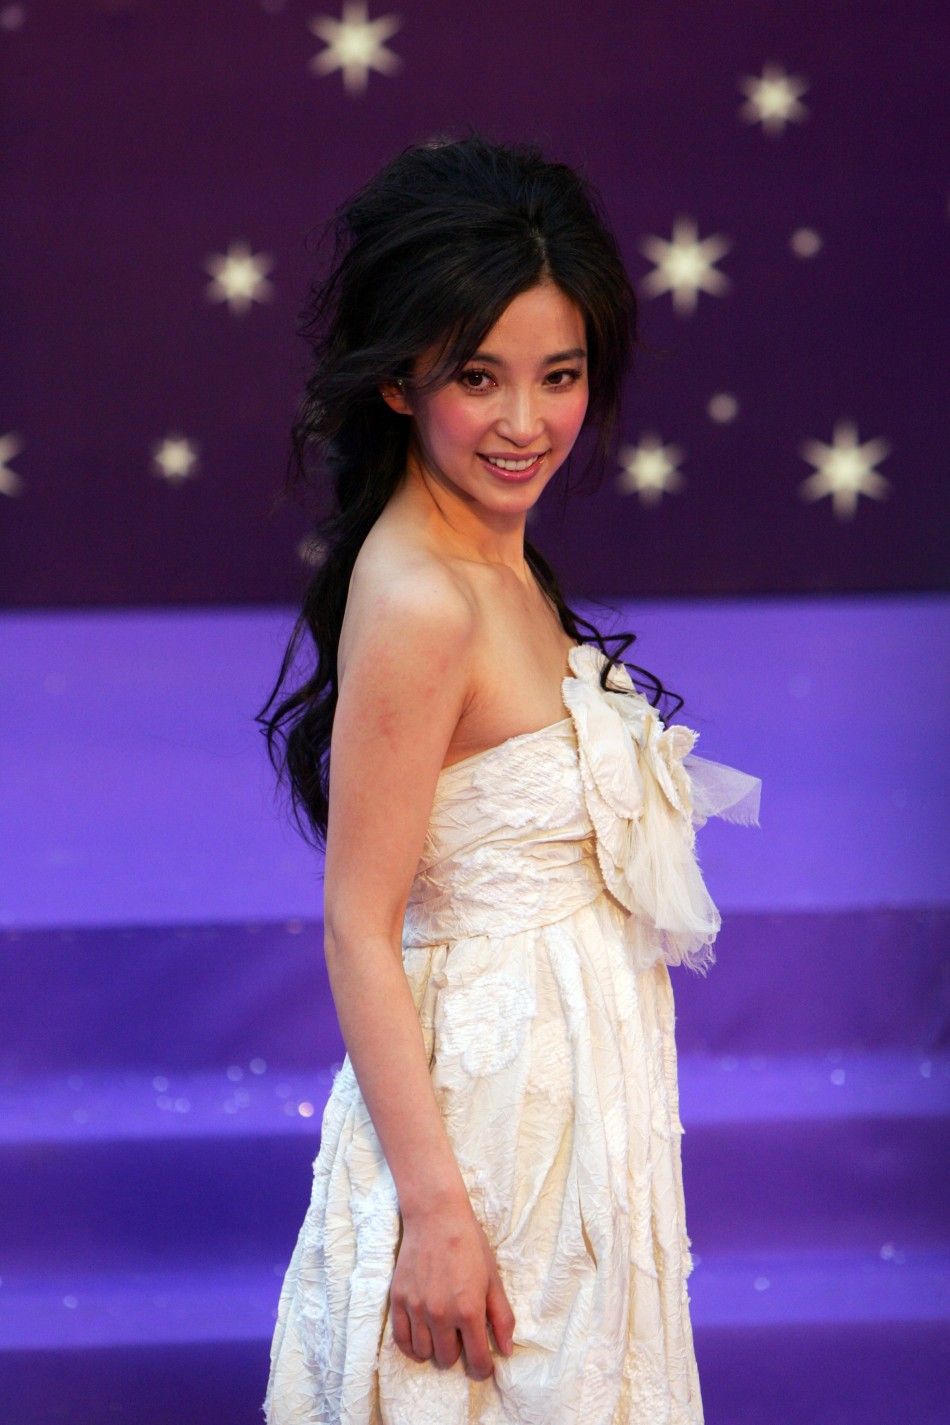 Li Bingbing, Chinese actress